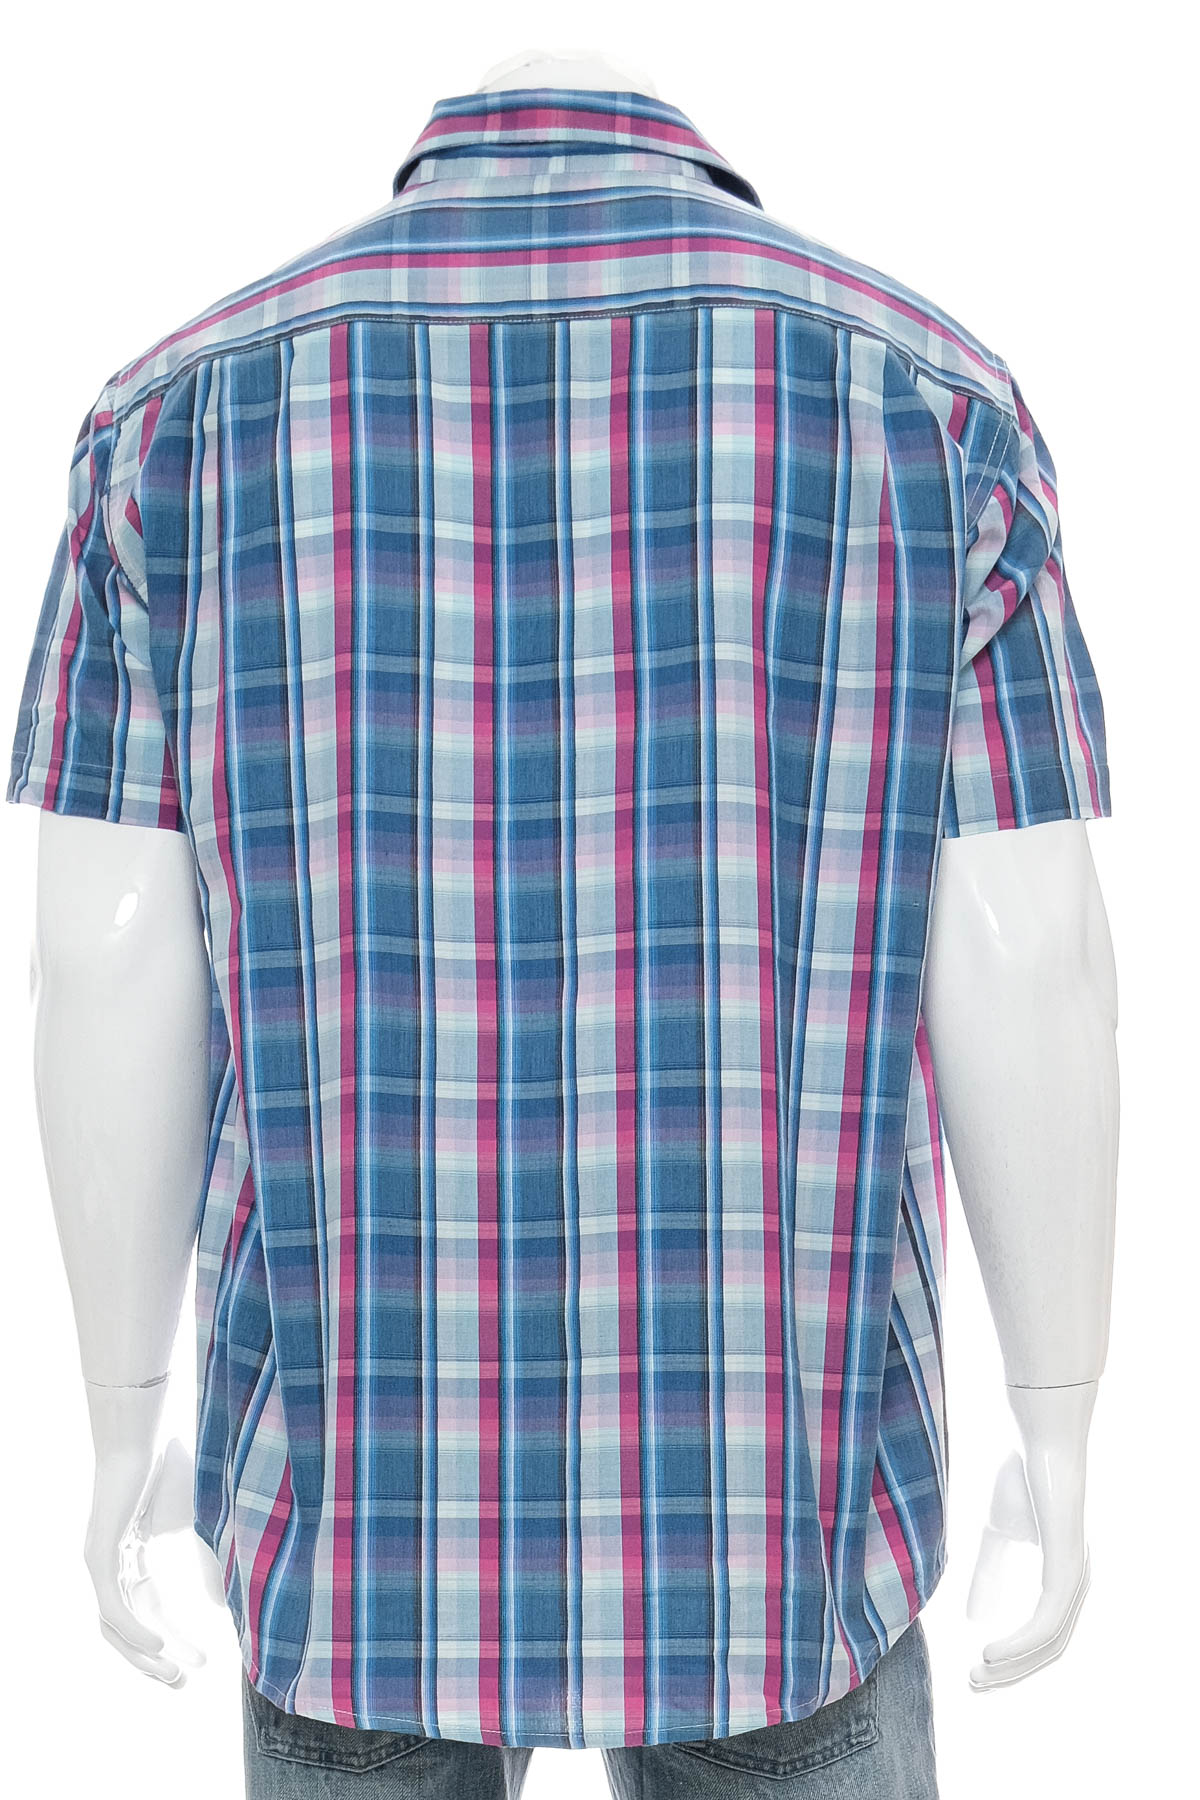 Ανδρικό πουκάμισο - GCM - 1